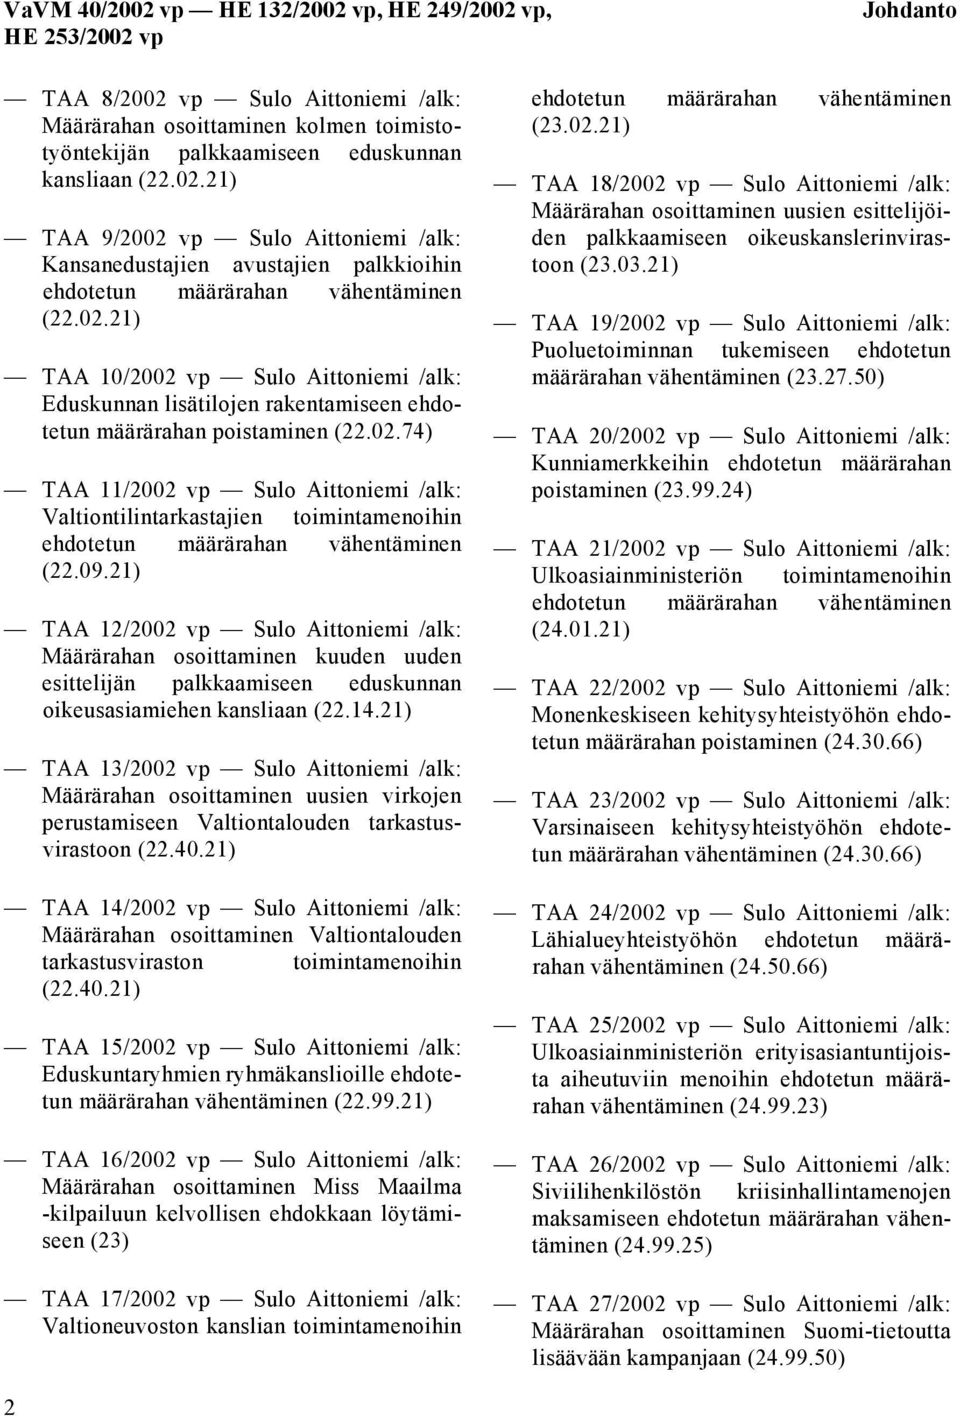 09.21) TAA 12/2002 vp Sulo Aittoniemi /alk: Määrärahan osoittaminen kuuden uuden esittelijän palkkaamiseen eduskunnan oikeusasiamiehen kansliaan (22.14.